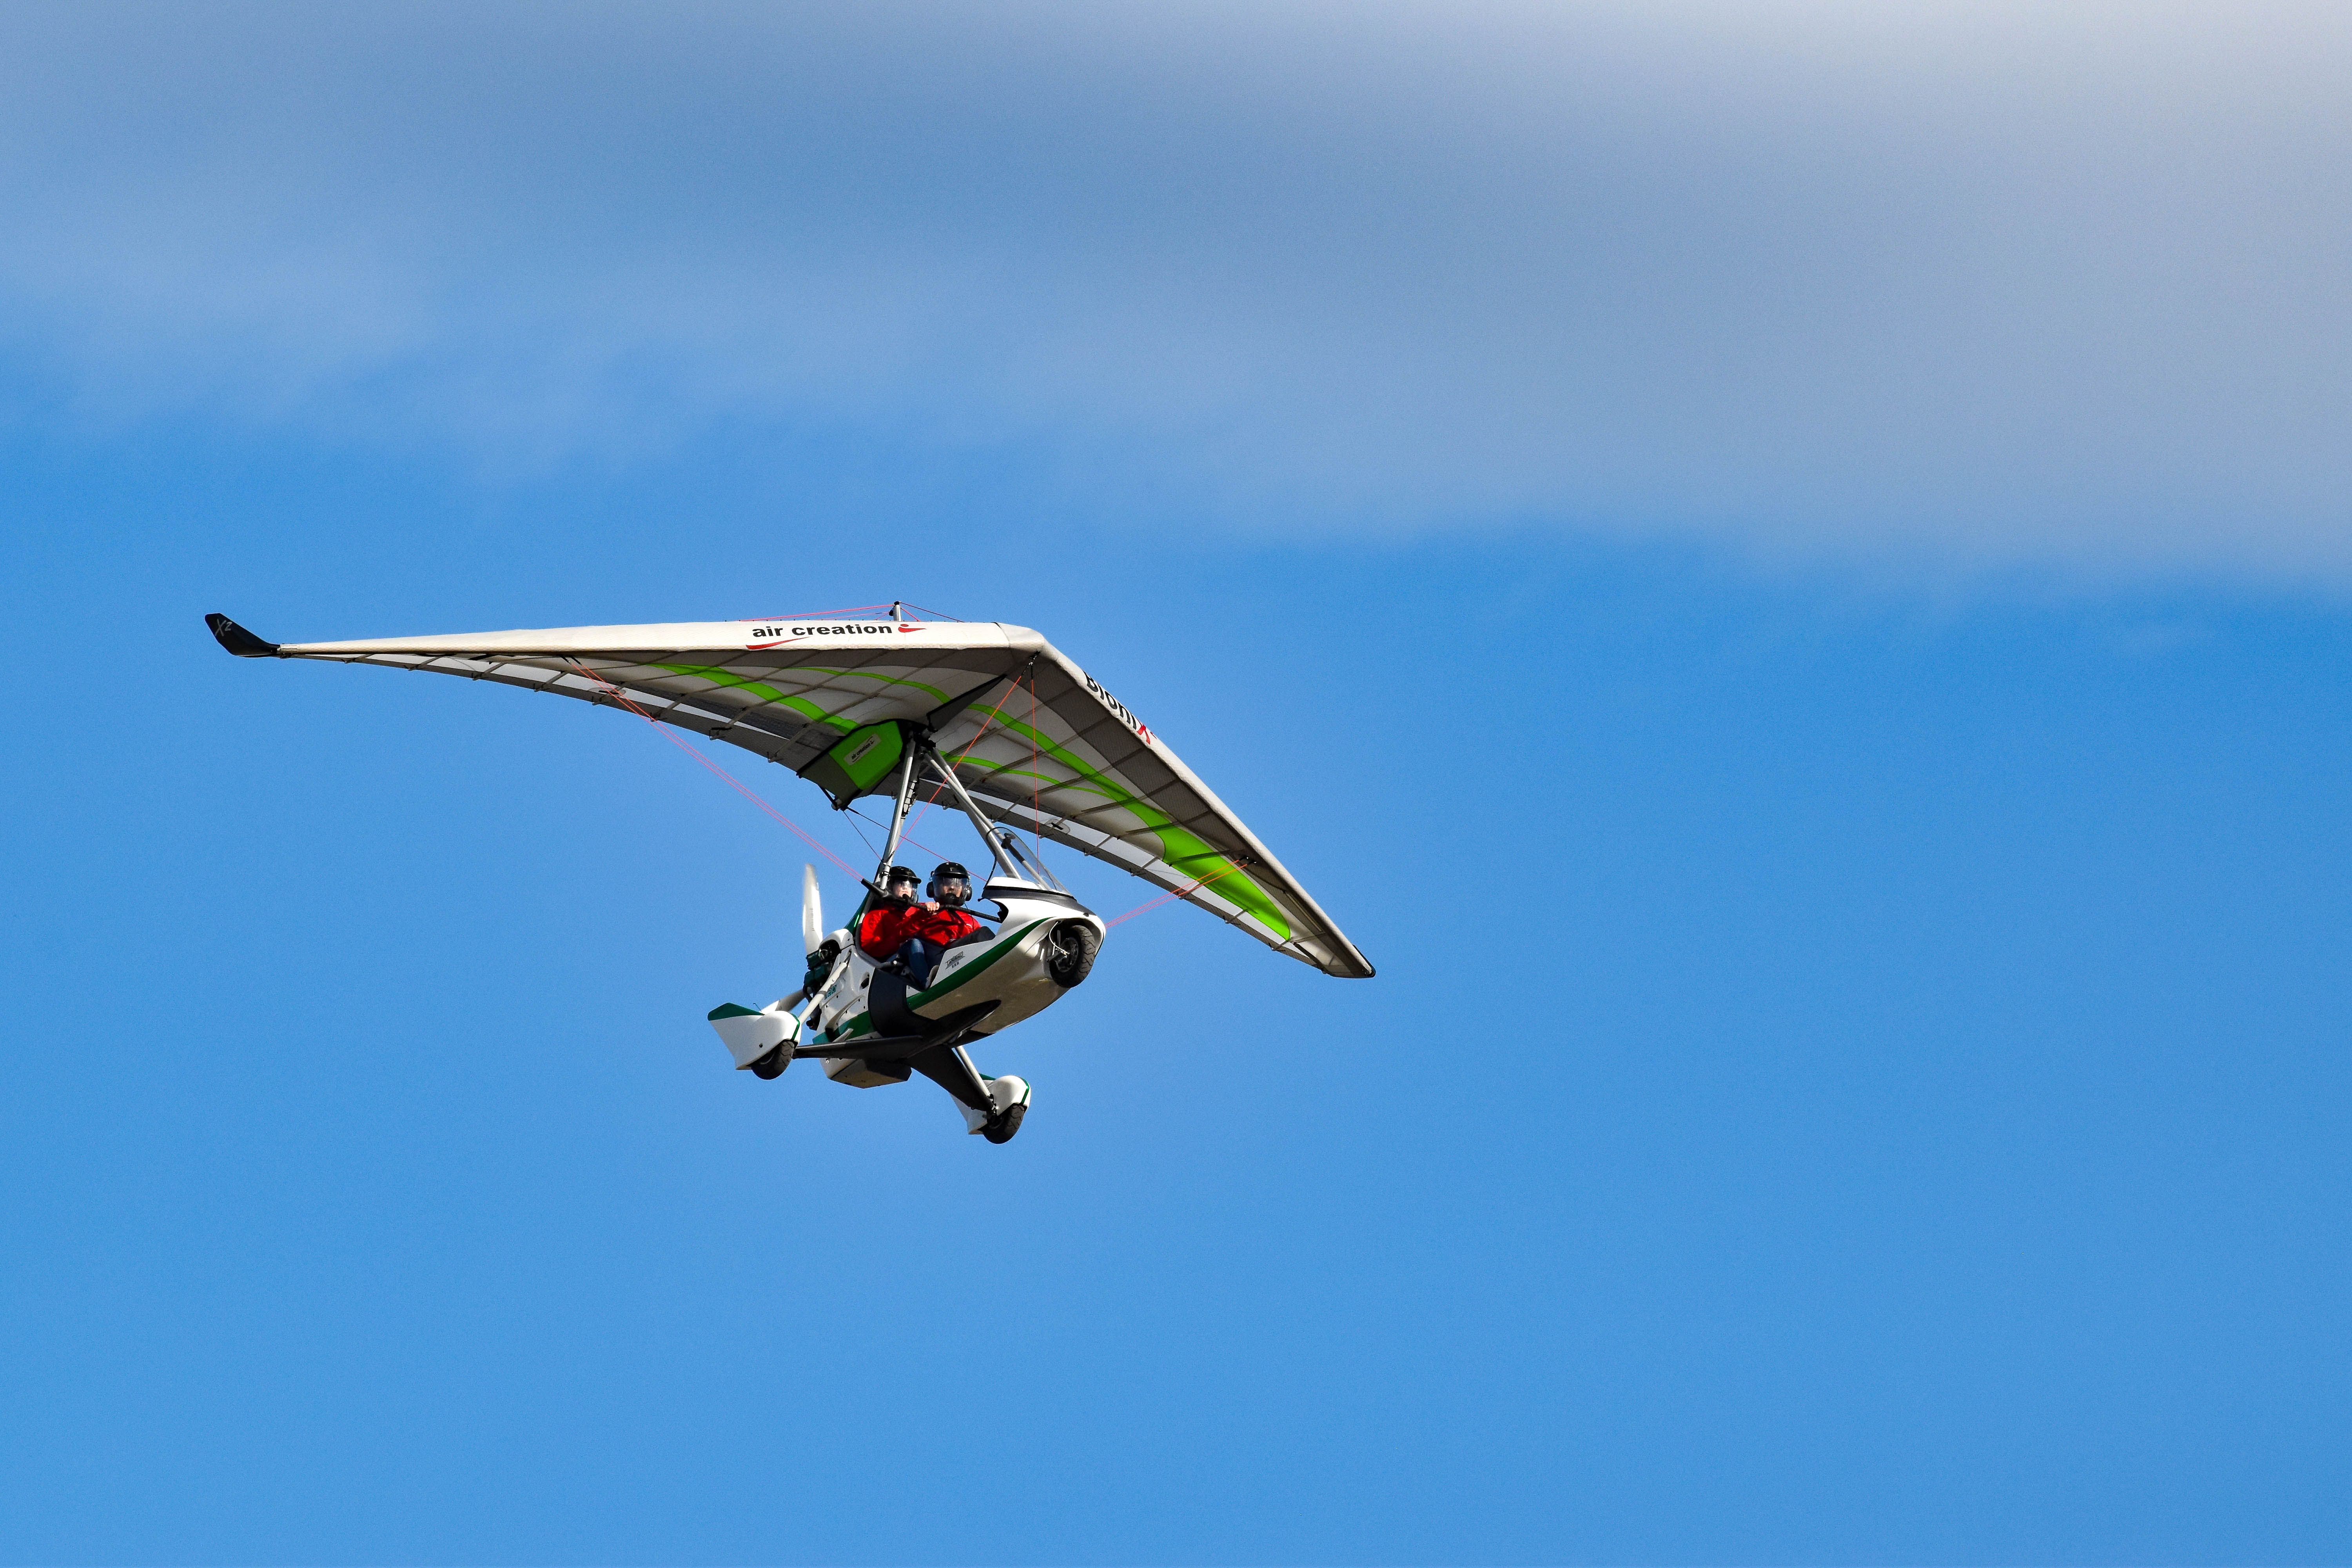 fly/en-vol-bionix2-tanarg-neo-en-vol-in-fly-ulm-pendulaire-ultralight-trike-wings-10.jpg